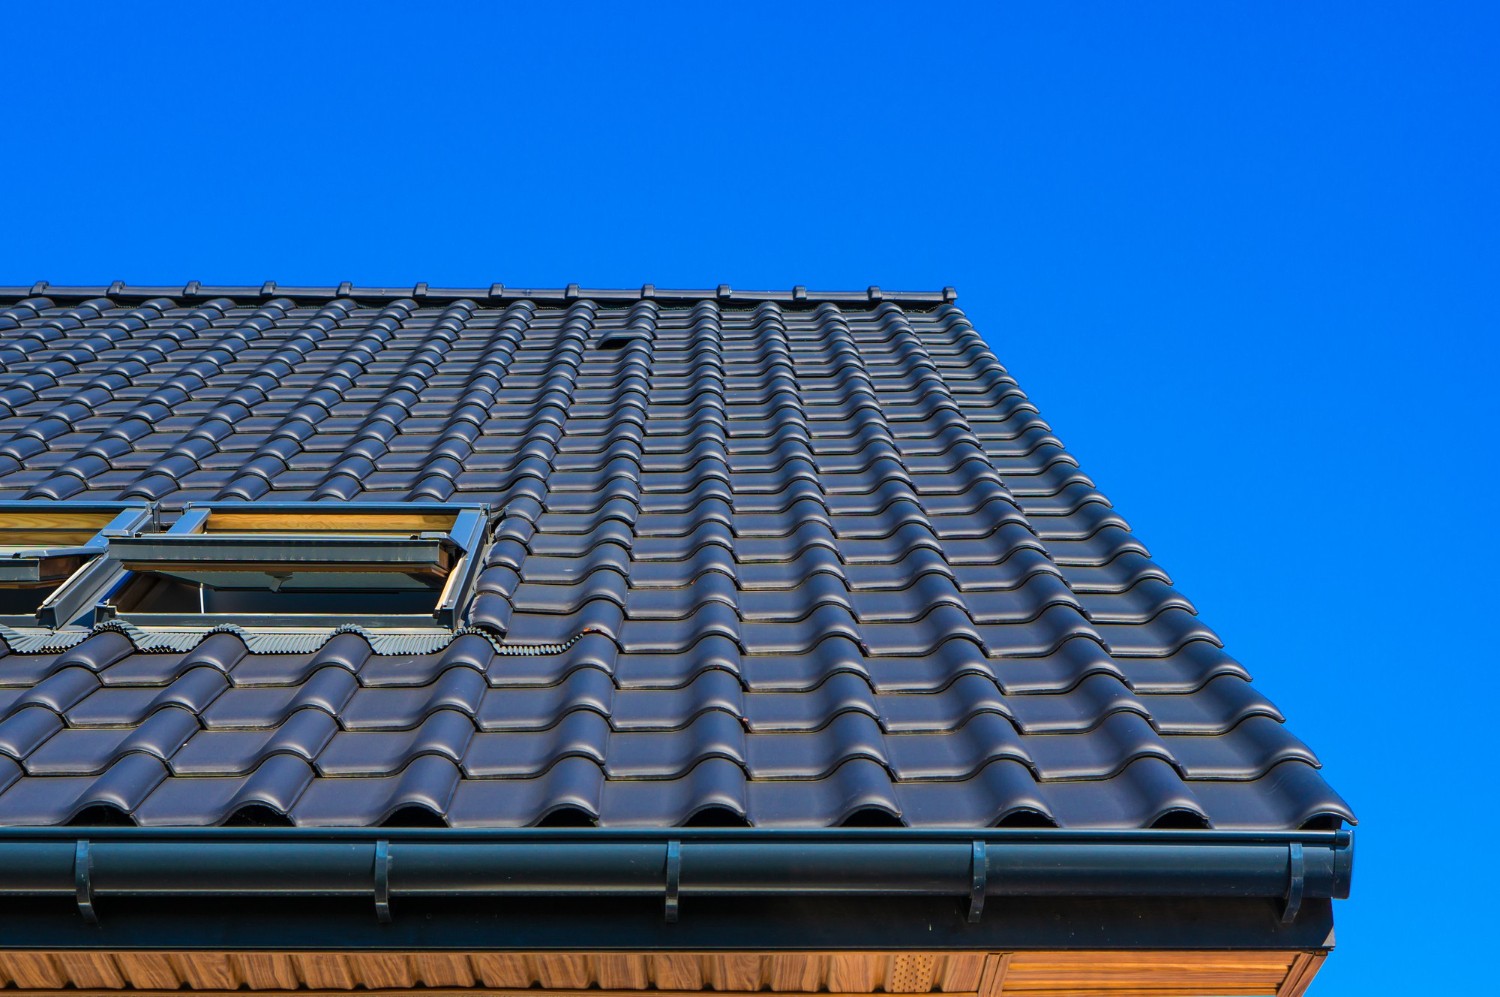  Matériaux courants pour la couverture de toit